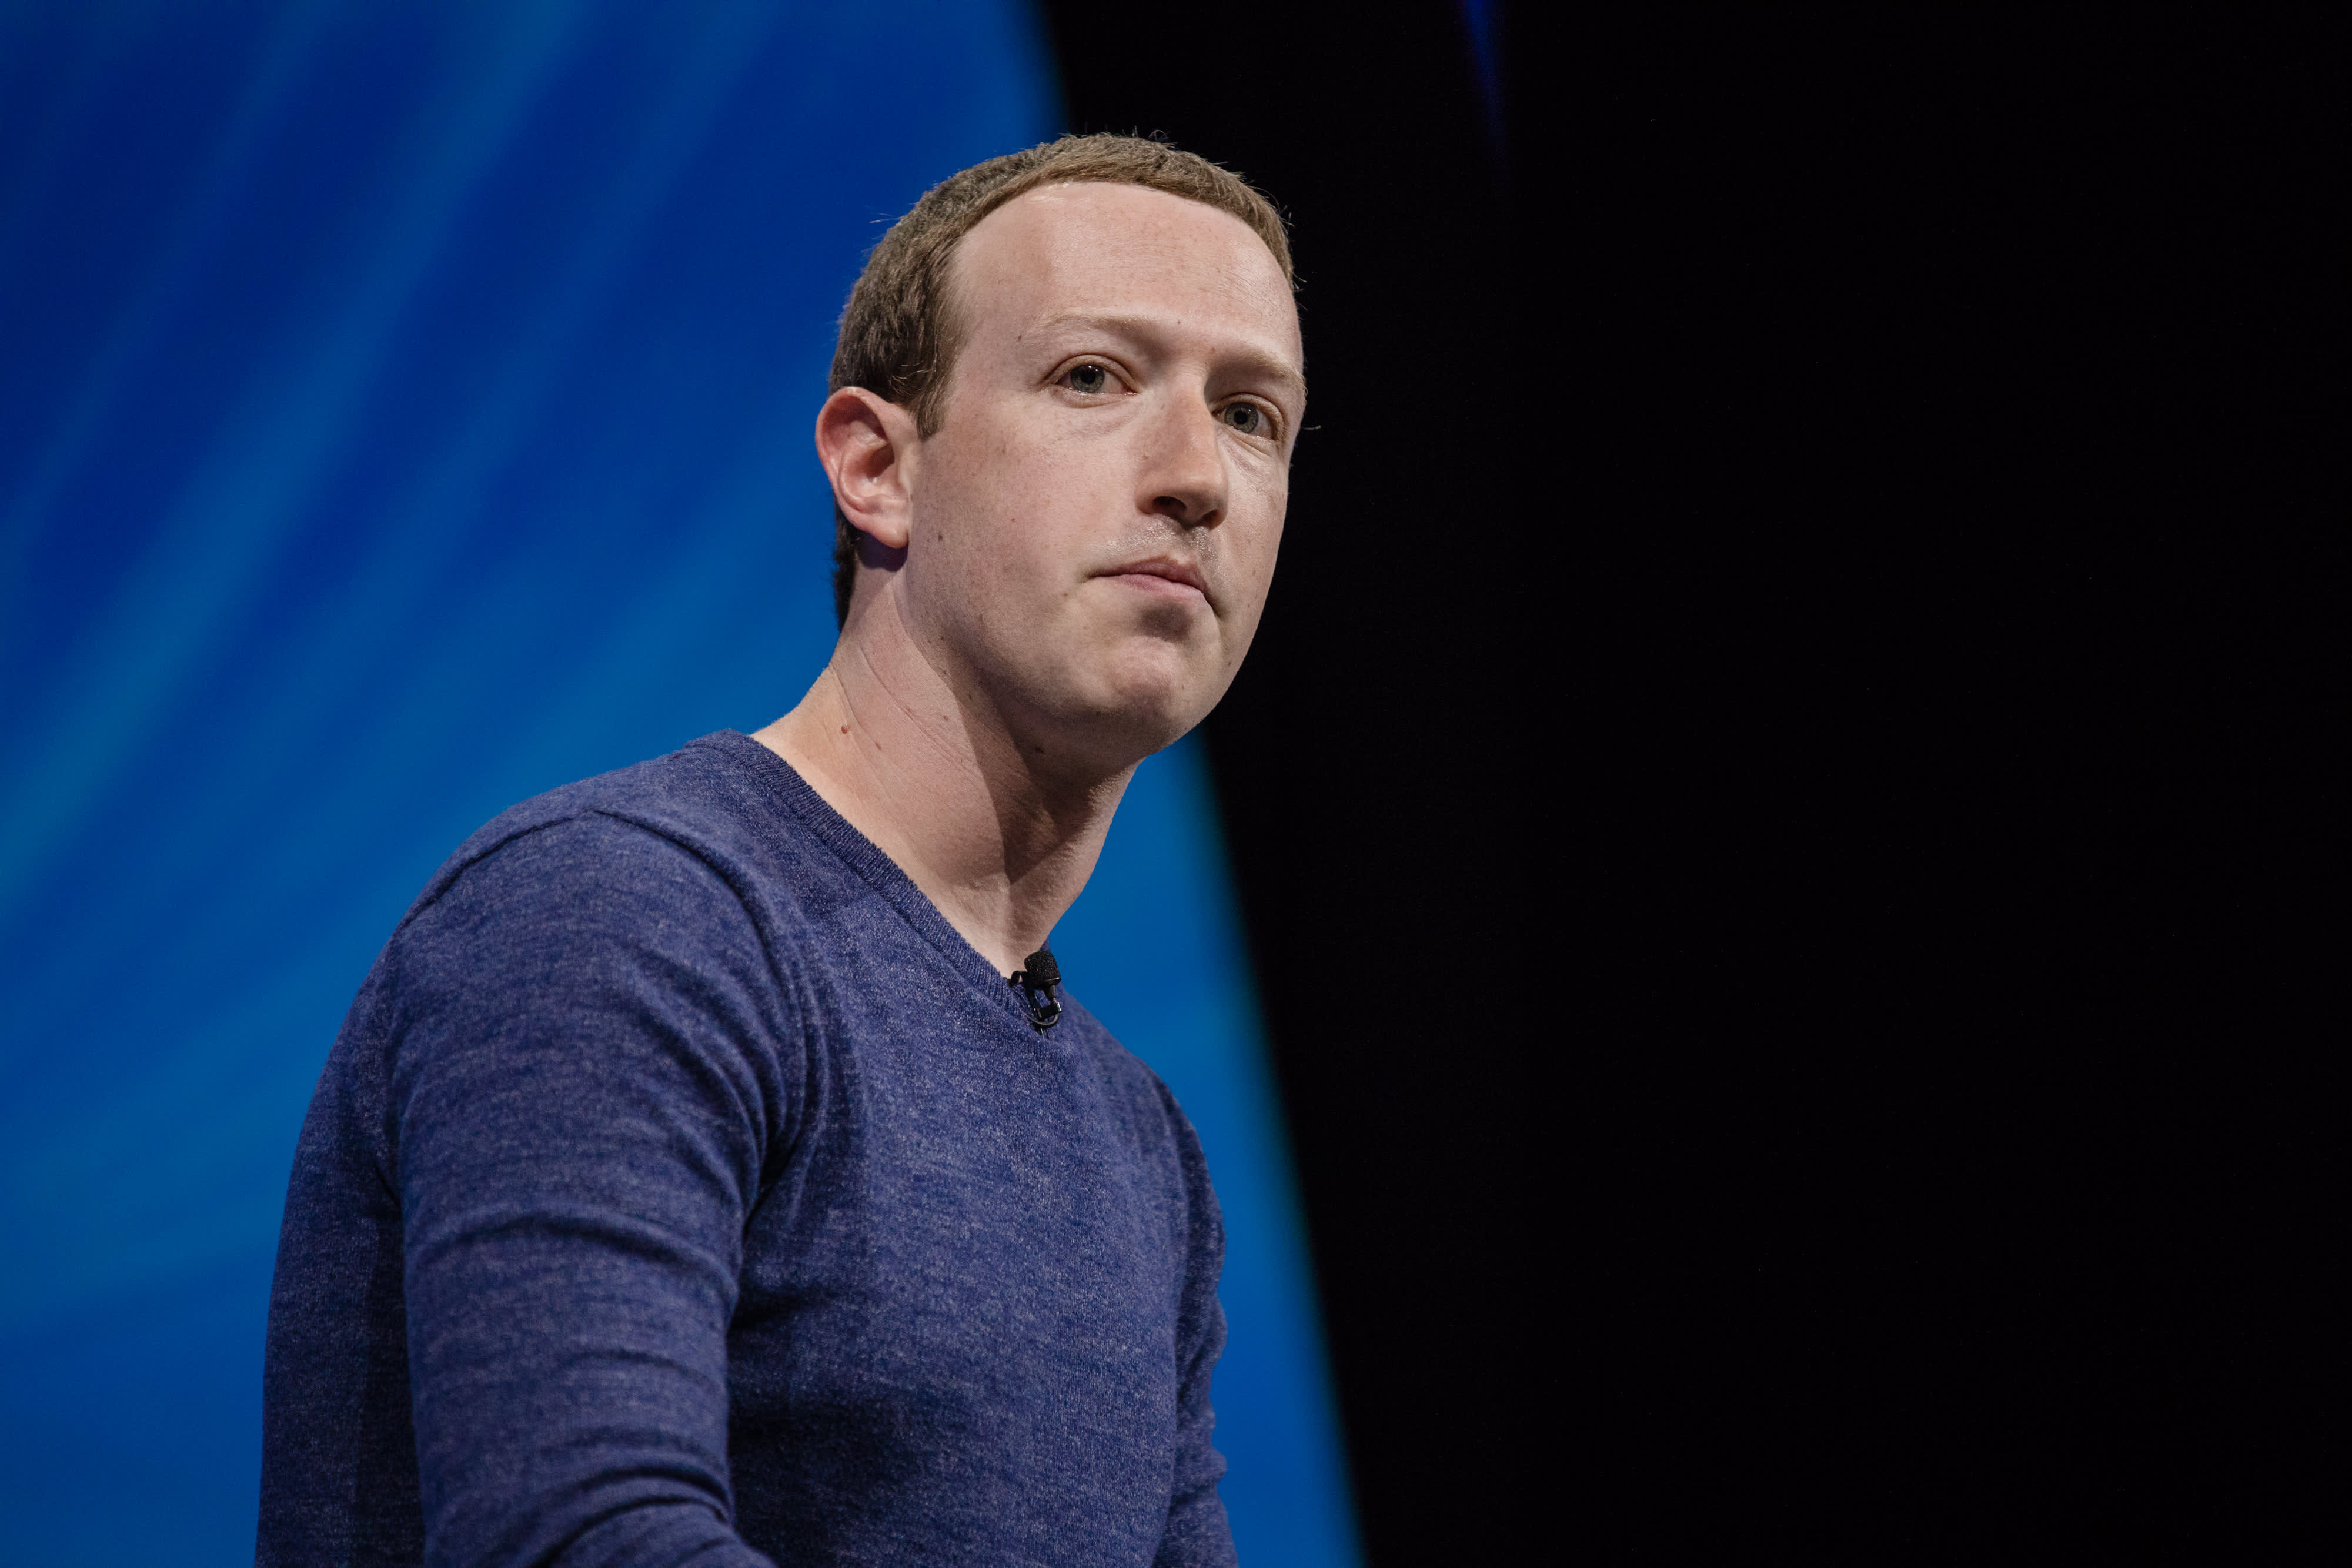 Facebook shares plummet 23% after reporting weak guidance (cnbc.com)